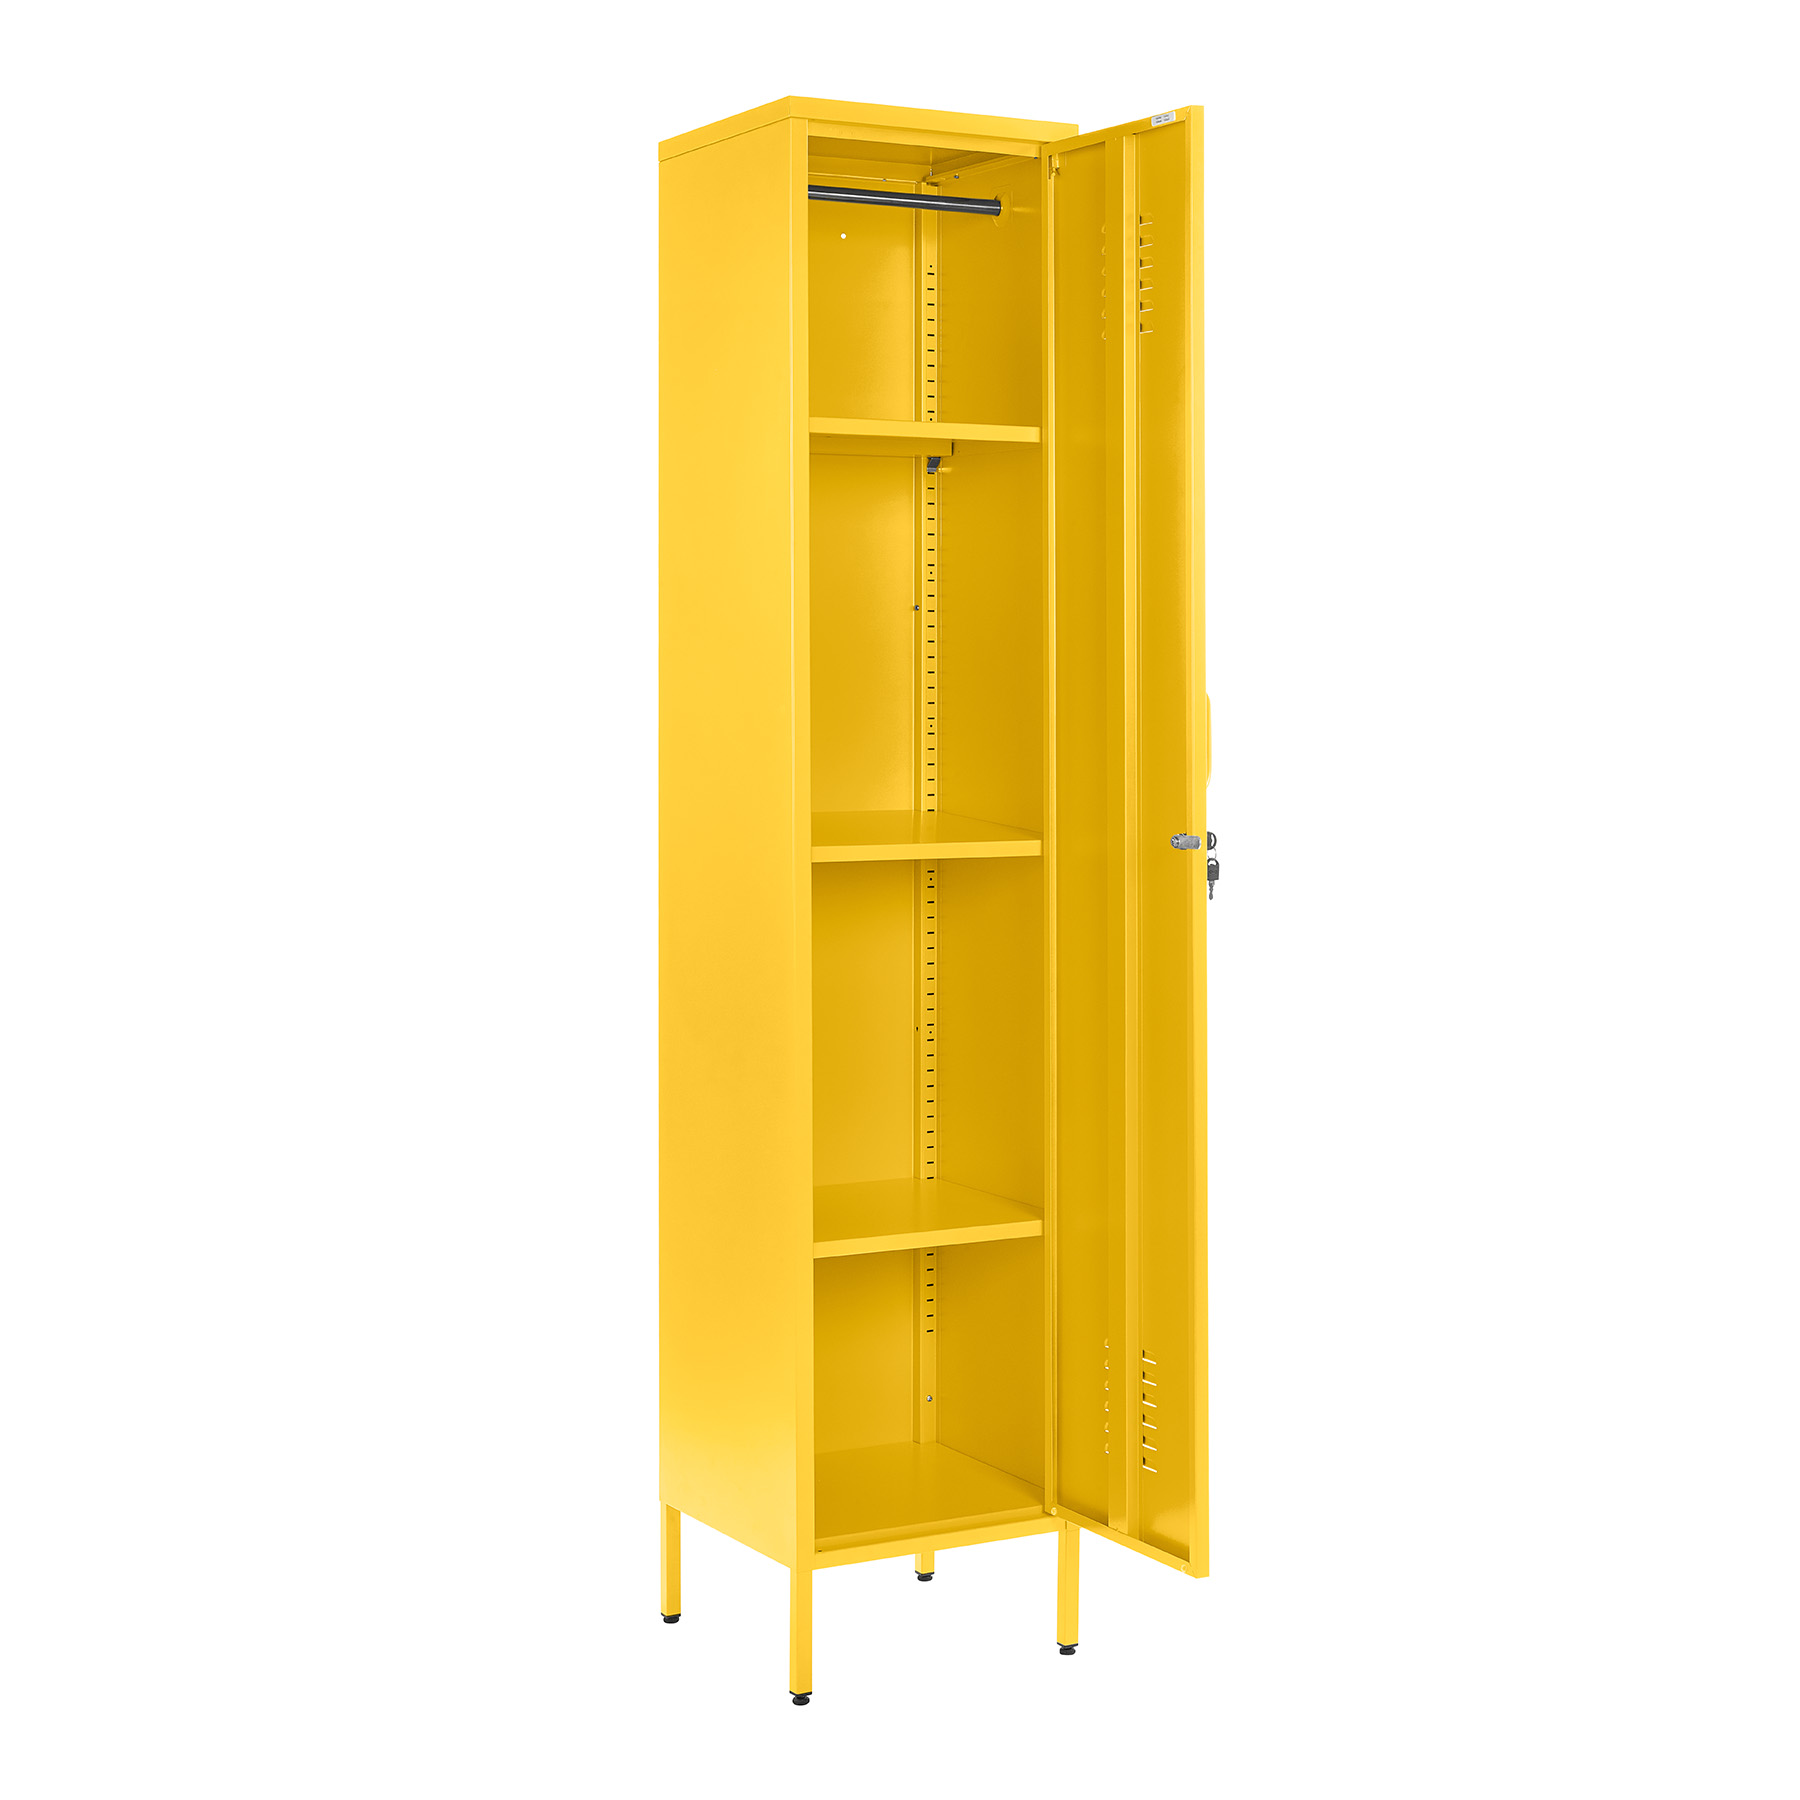 lc 01 yellow 1 door metal locker cabinet 1800mm